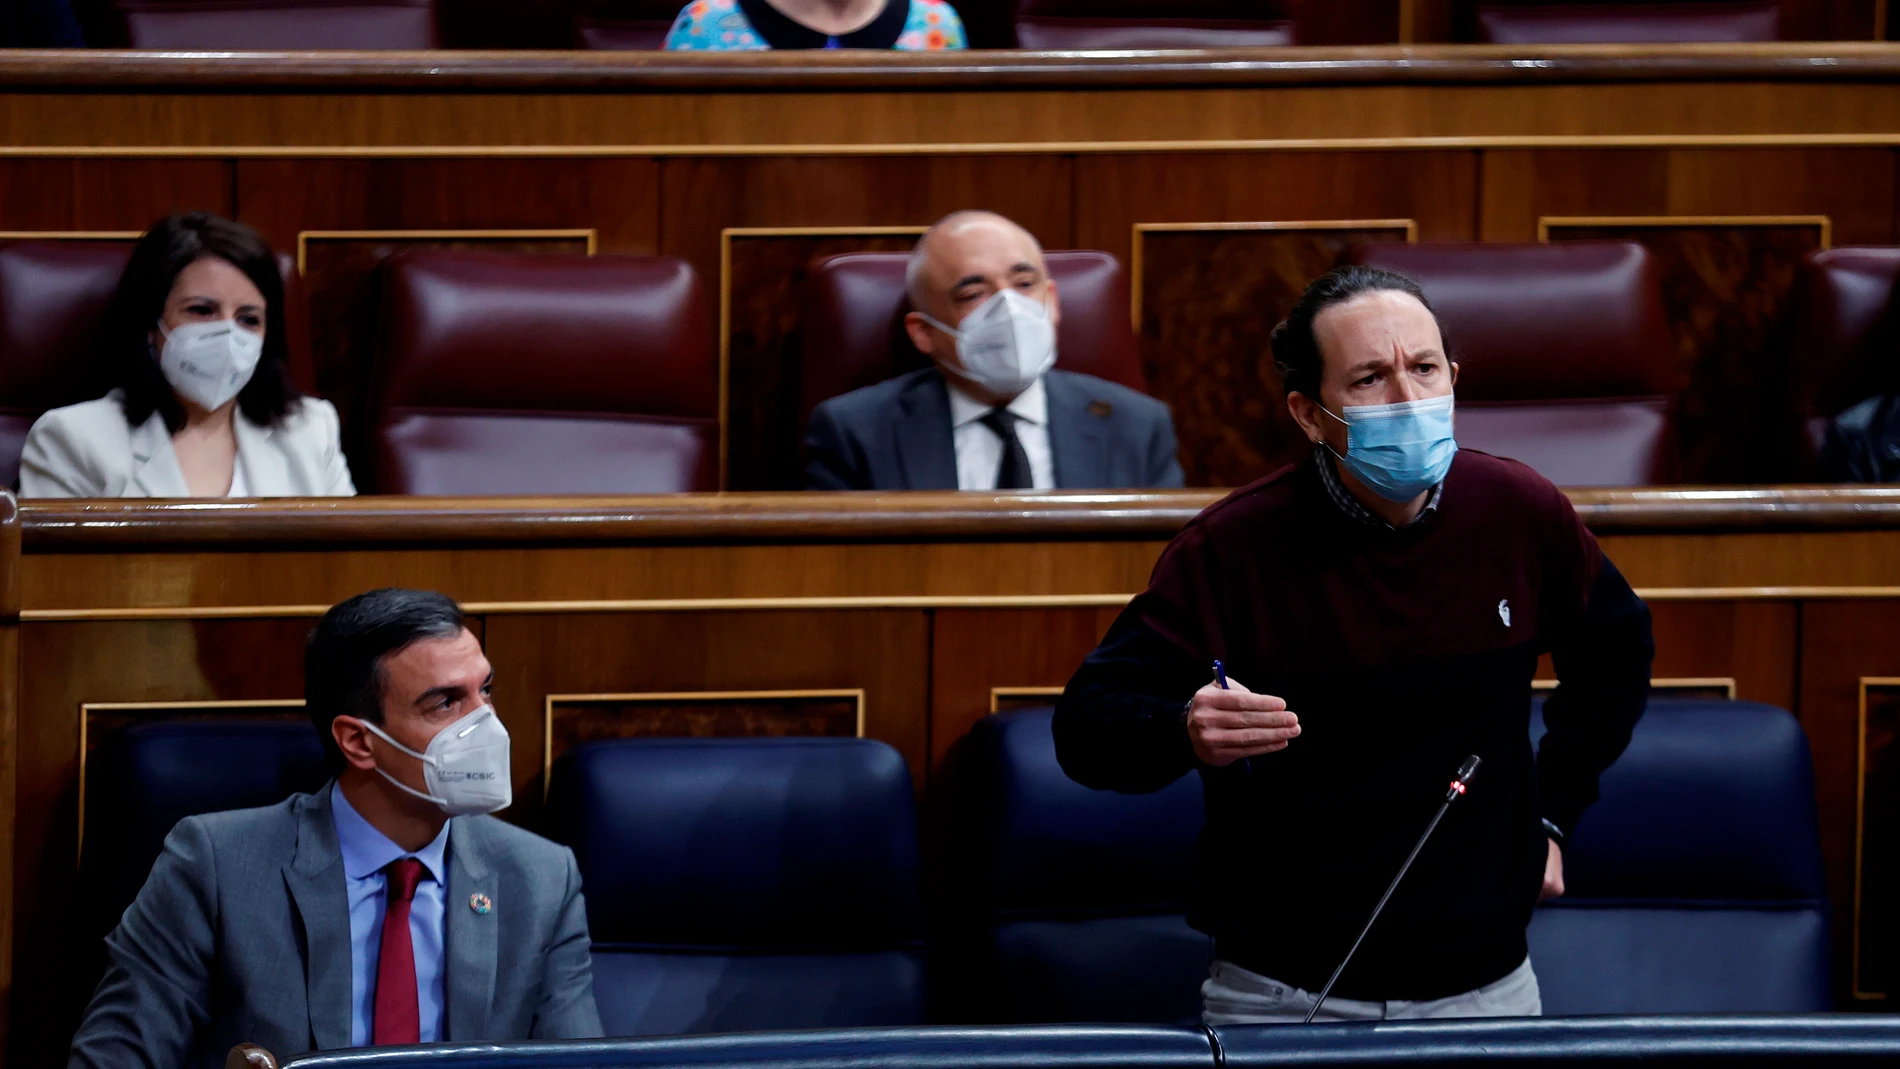 Pablo Iglesias interviene en el Congreso ante la mirada de Pedro Sánchez